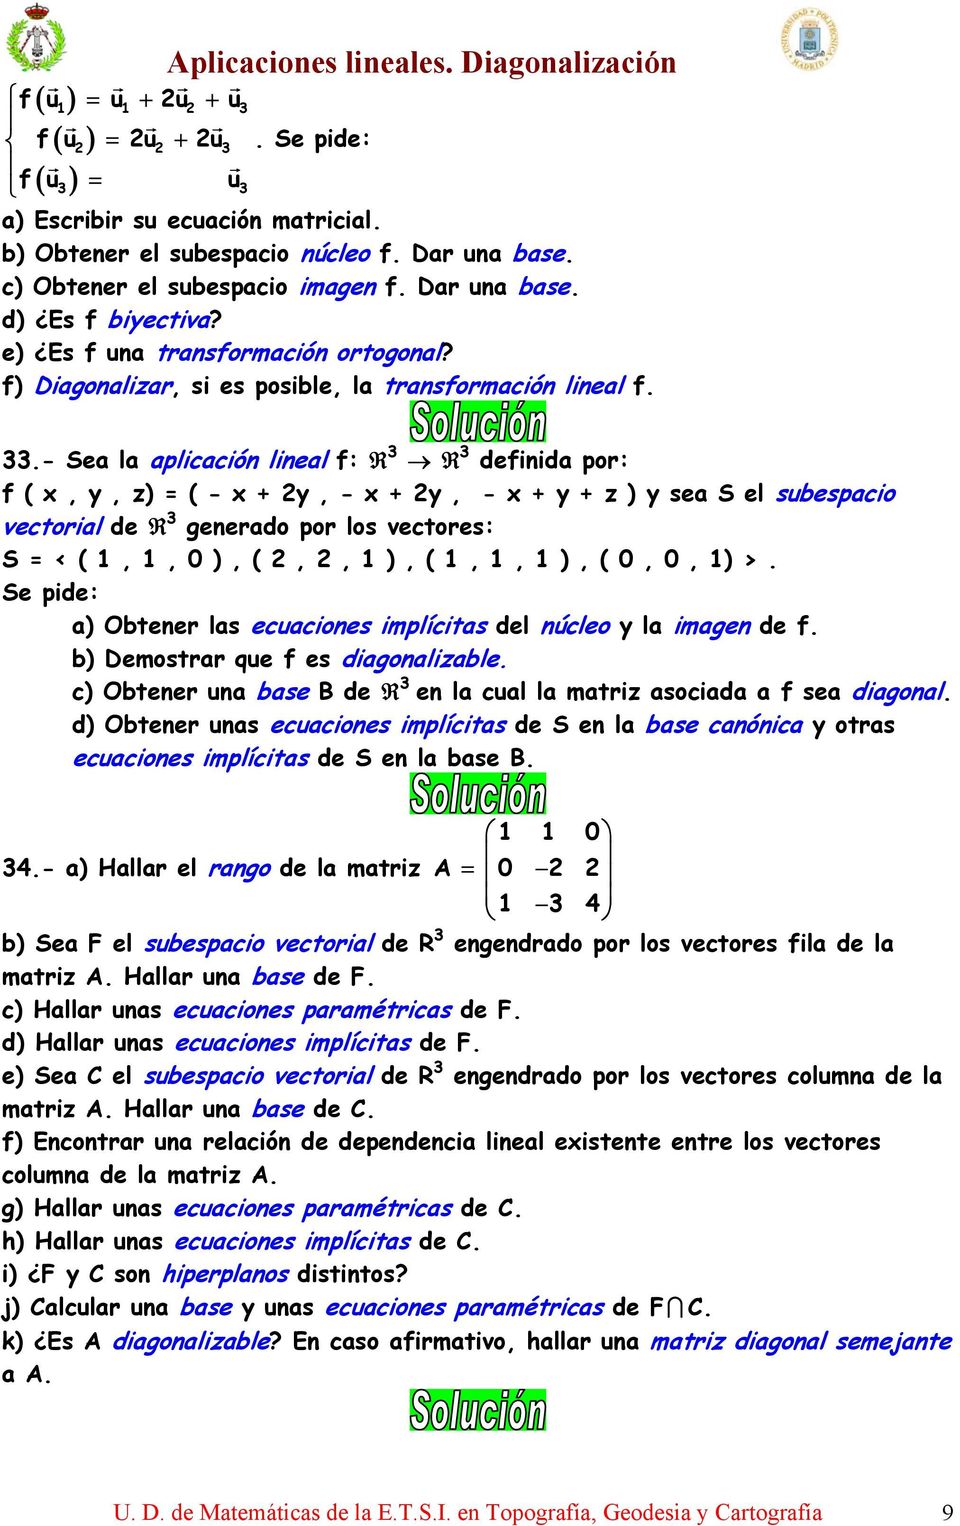 .- Sea la aplicación lineal f: definida por: f ( x, y, z) = ( - x + y, - x + y, - x + y + z ) y sea S el subespacio vectorial de generado por los vectores: S = < (,, ), (,, ), (,, ), (,, ) >.